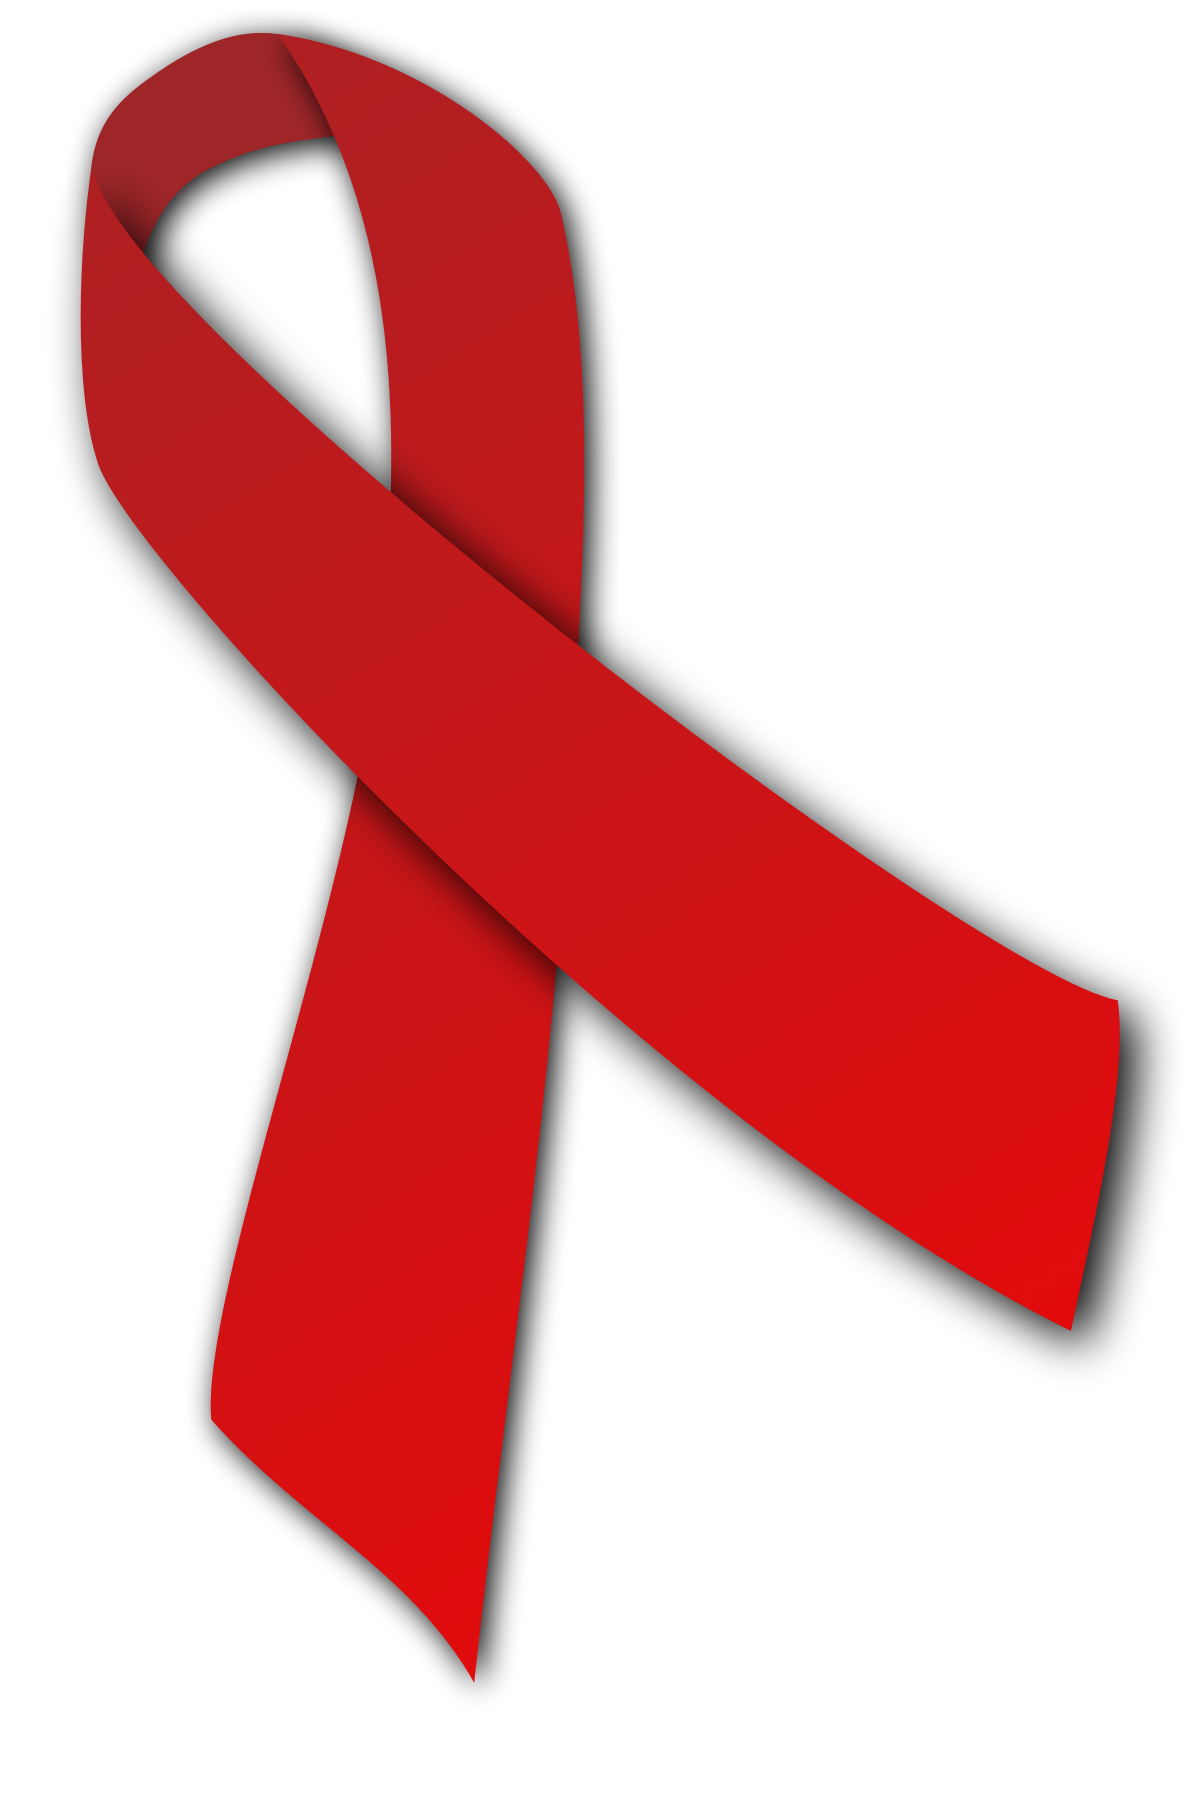 مرض hiv فيروس العوز